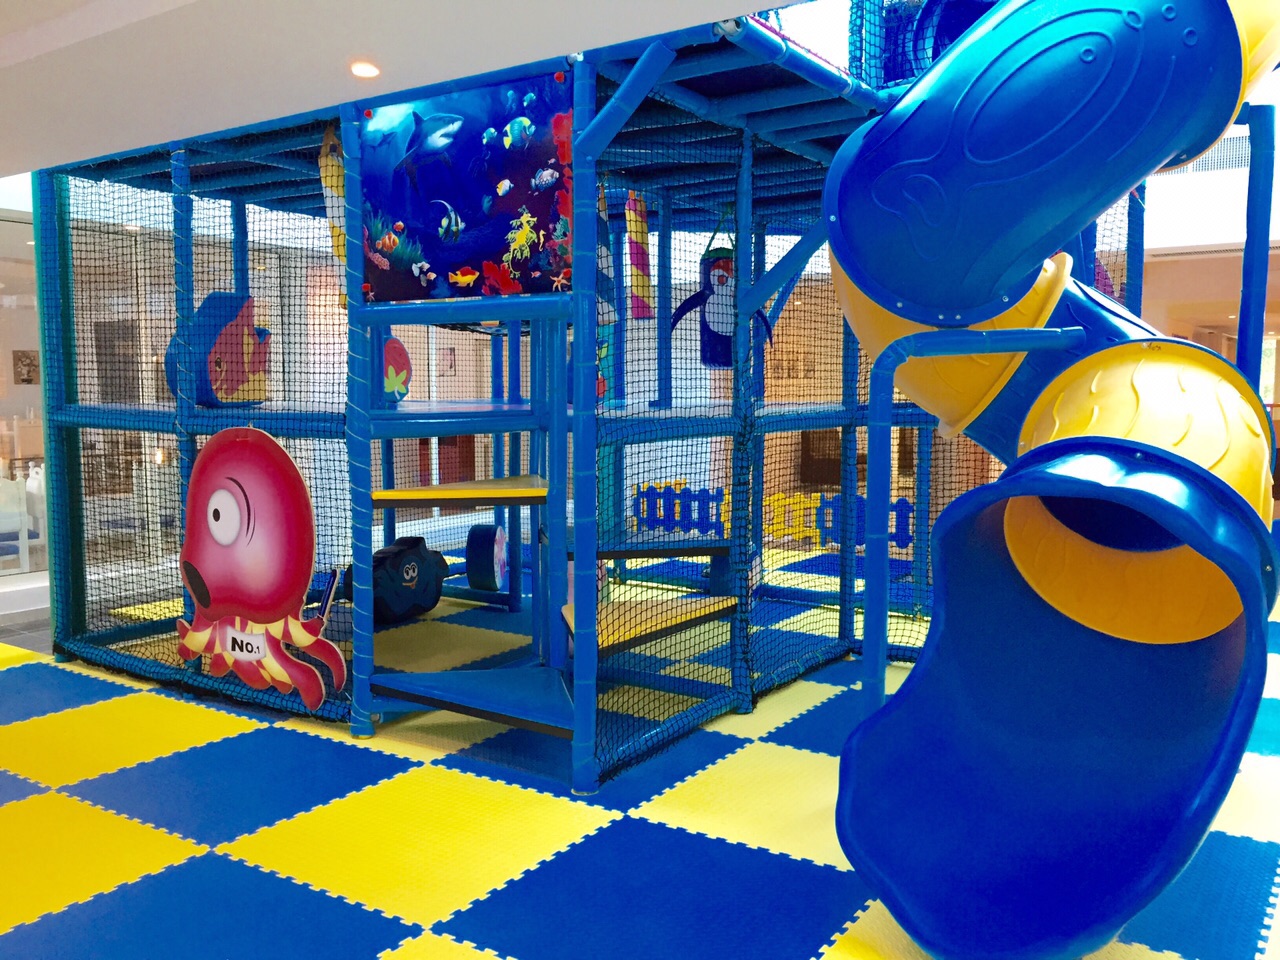 Синяя акула тематическая детская мягкая игровая площадка